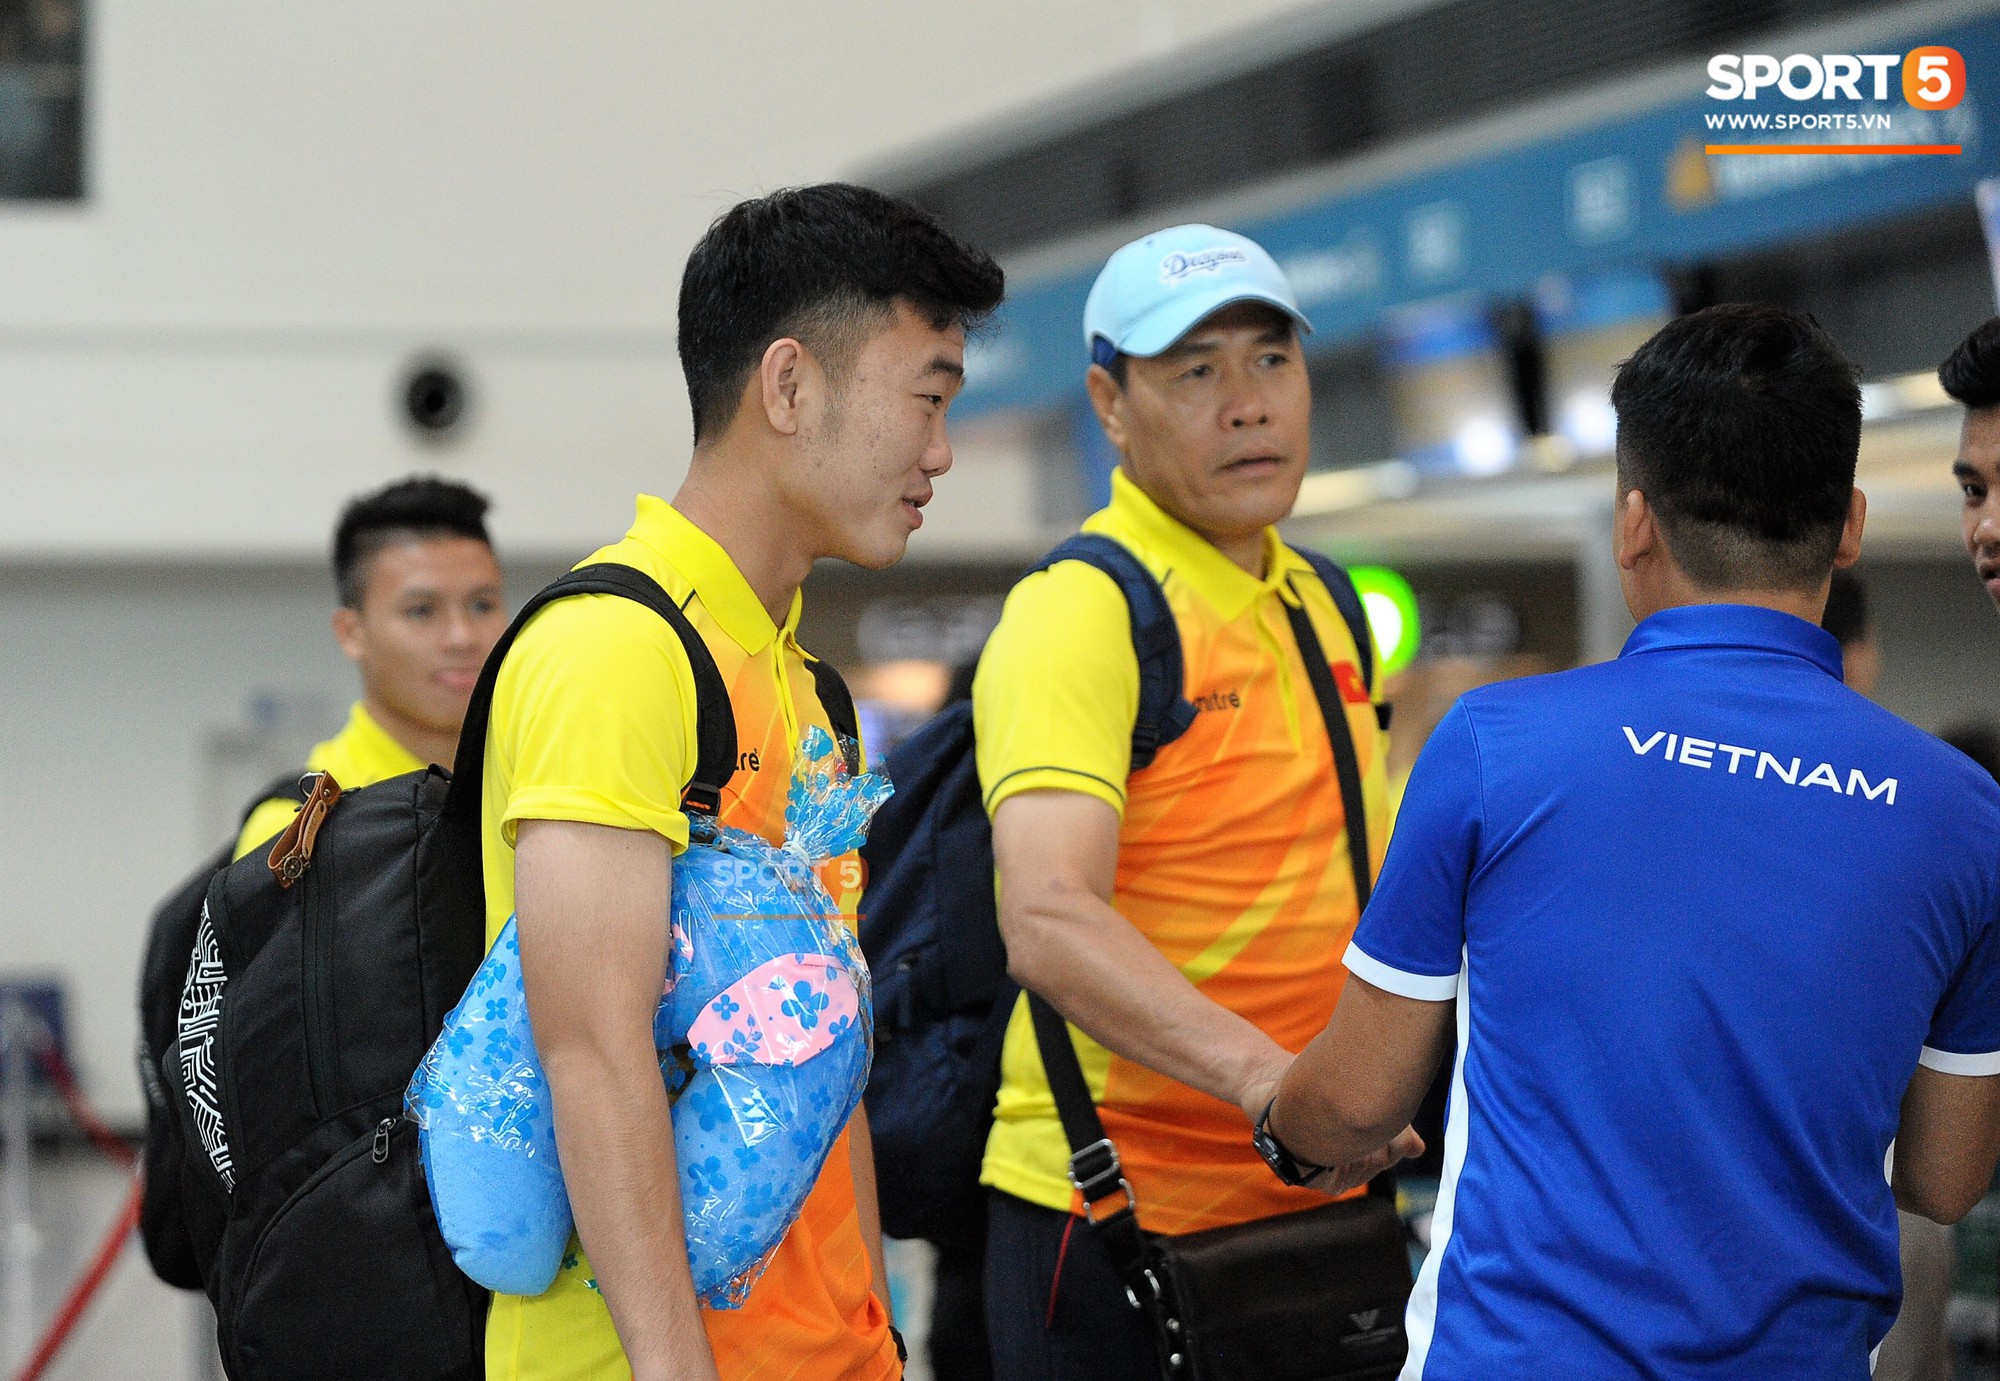 Những phụ kiện không thể tách rời các cầu thủ Olympic Việt Nam ở sân bay - Ảnh 2.